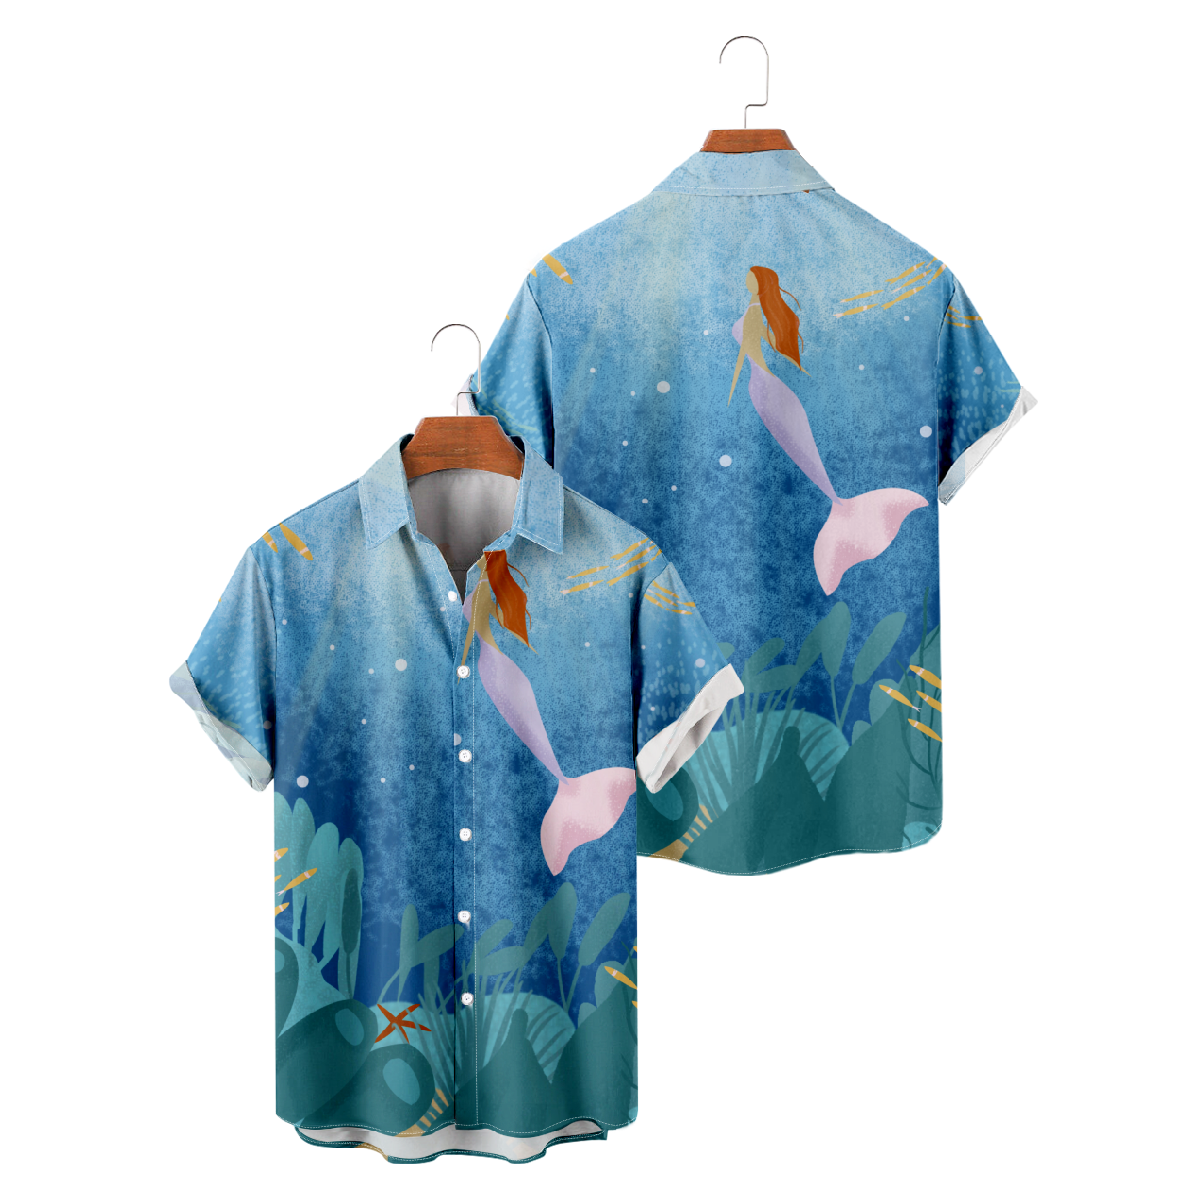 Mermaid Hawaiian Shirt Men's Short Sleeve Shirt Button Up Summer Tops